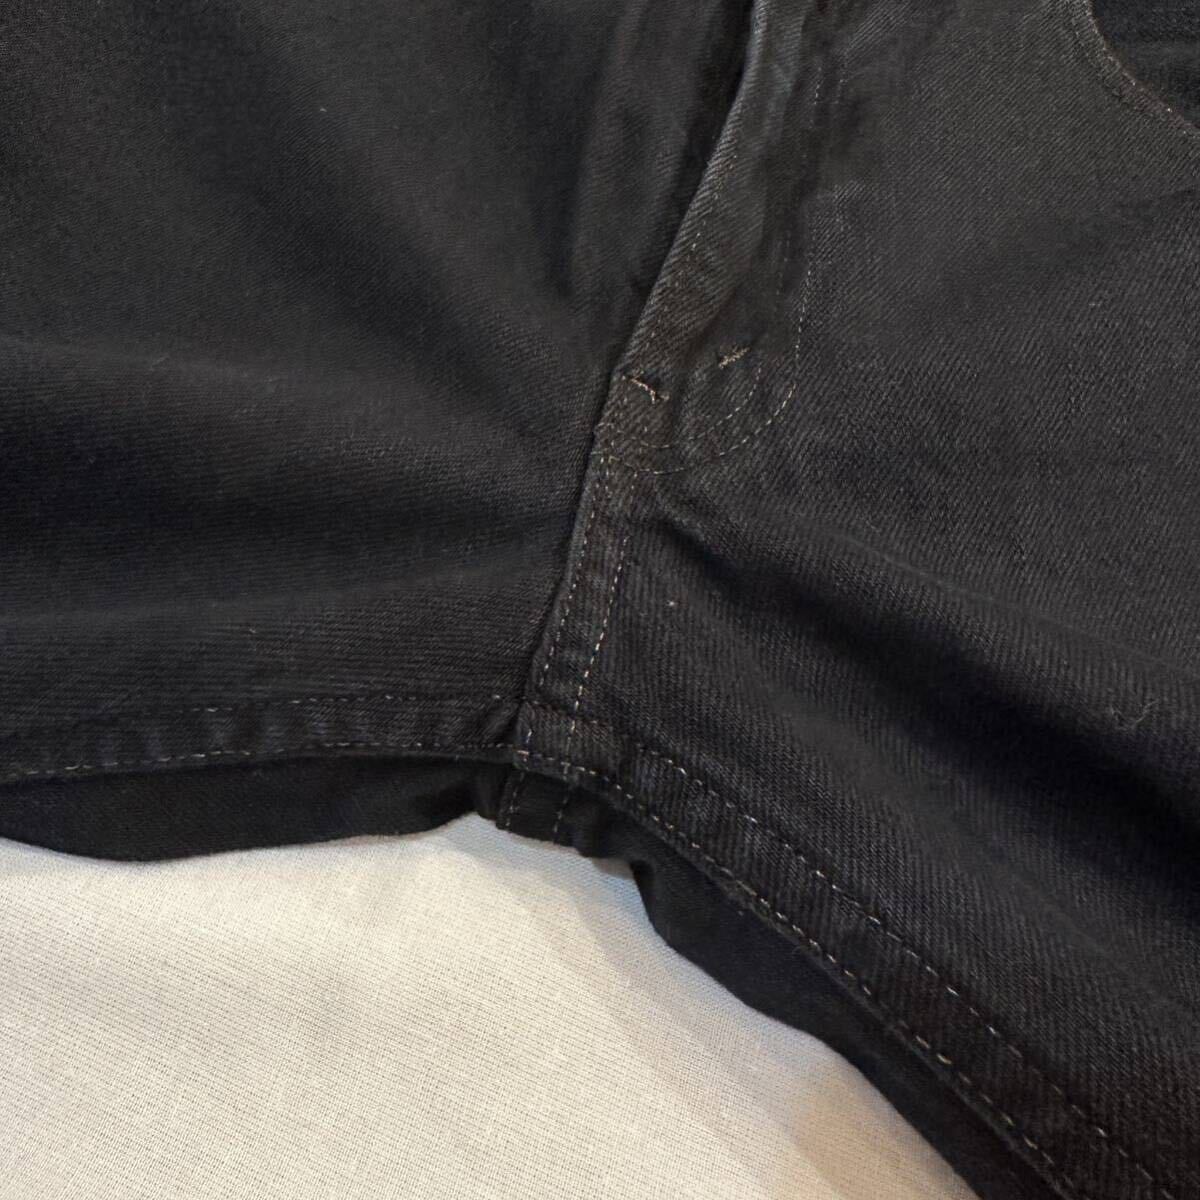 USA製 Levi's Vintage Clothing 606 30605-0038 Black Denim Pant リーバイス ビンテージ クロージング ブラック デニム パンツ W30 